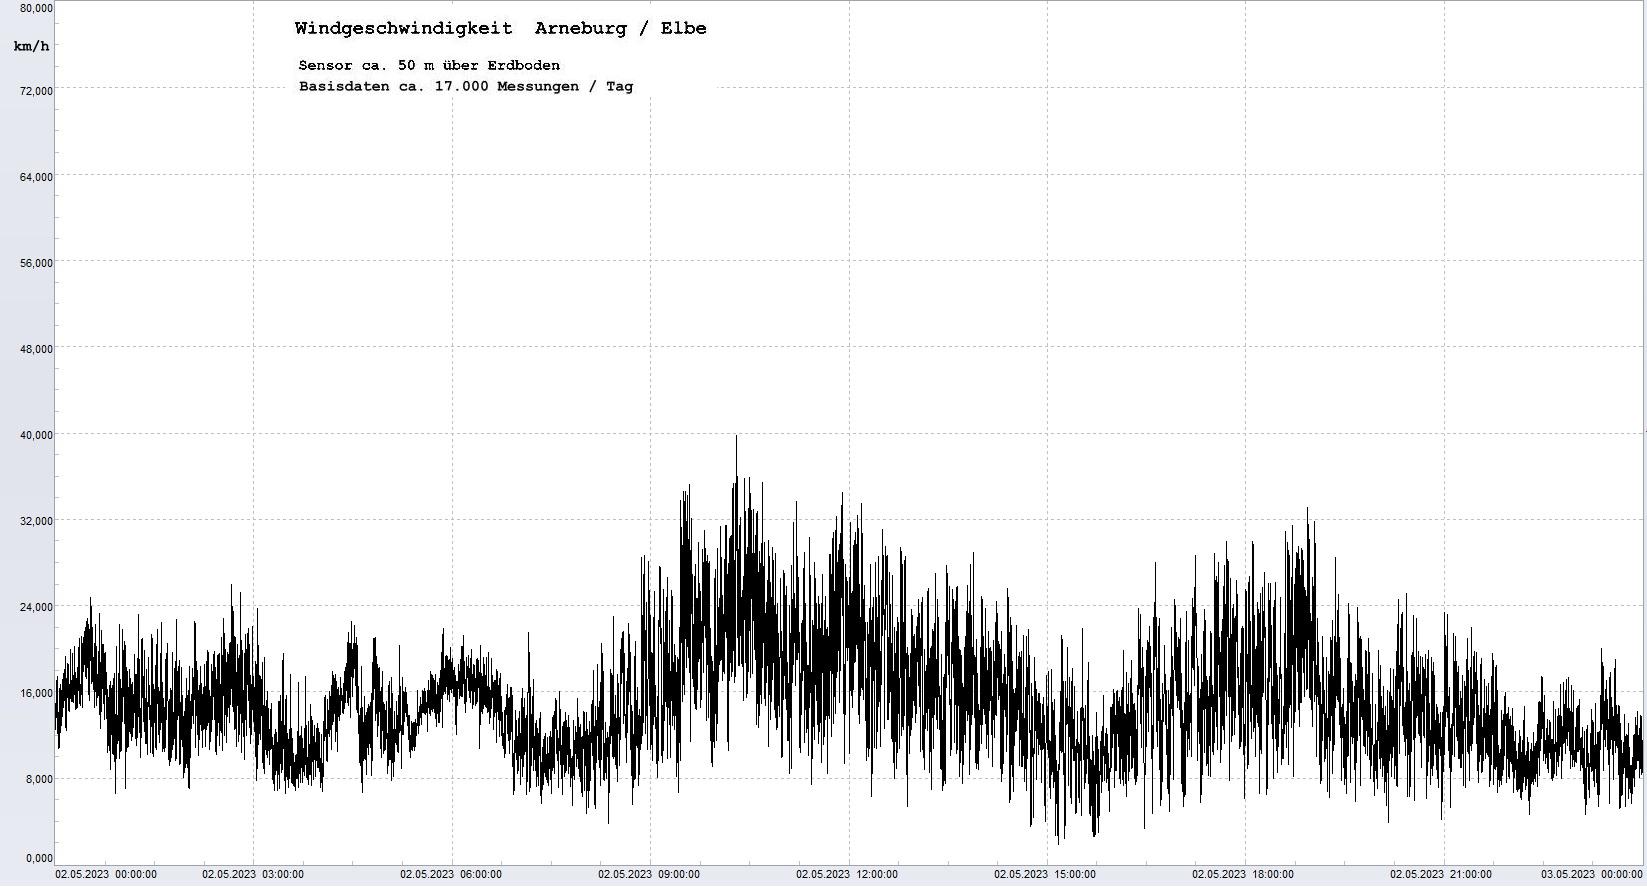 Arneburg Tages-Diagramm Winddaten, 02.05.2023
  Diagramm, Sensor auf Gebäude, ca. 50 m über Erdboden, Basis: 5s-Aufzeichnung